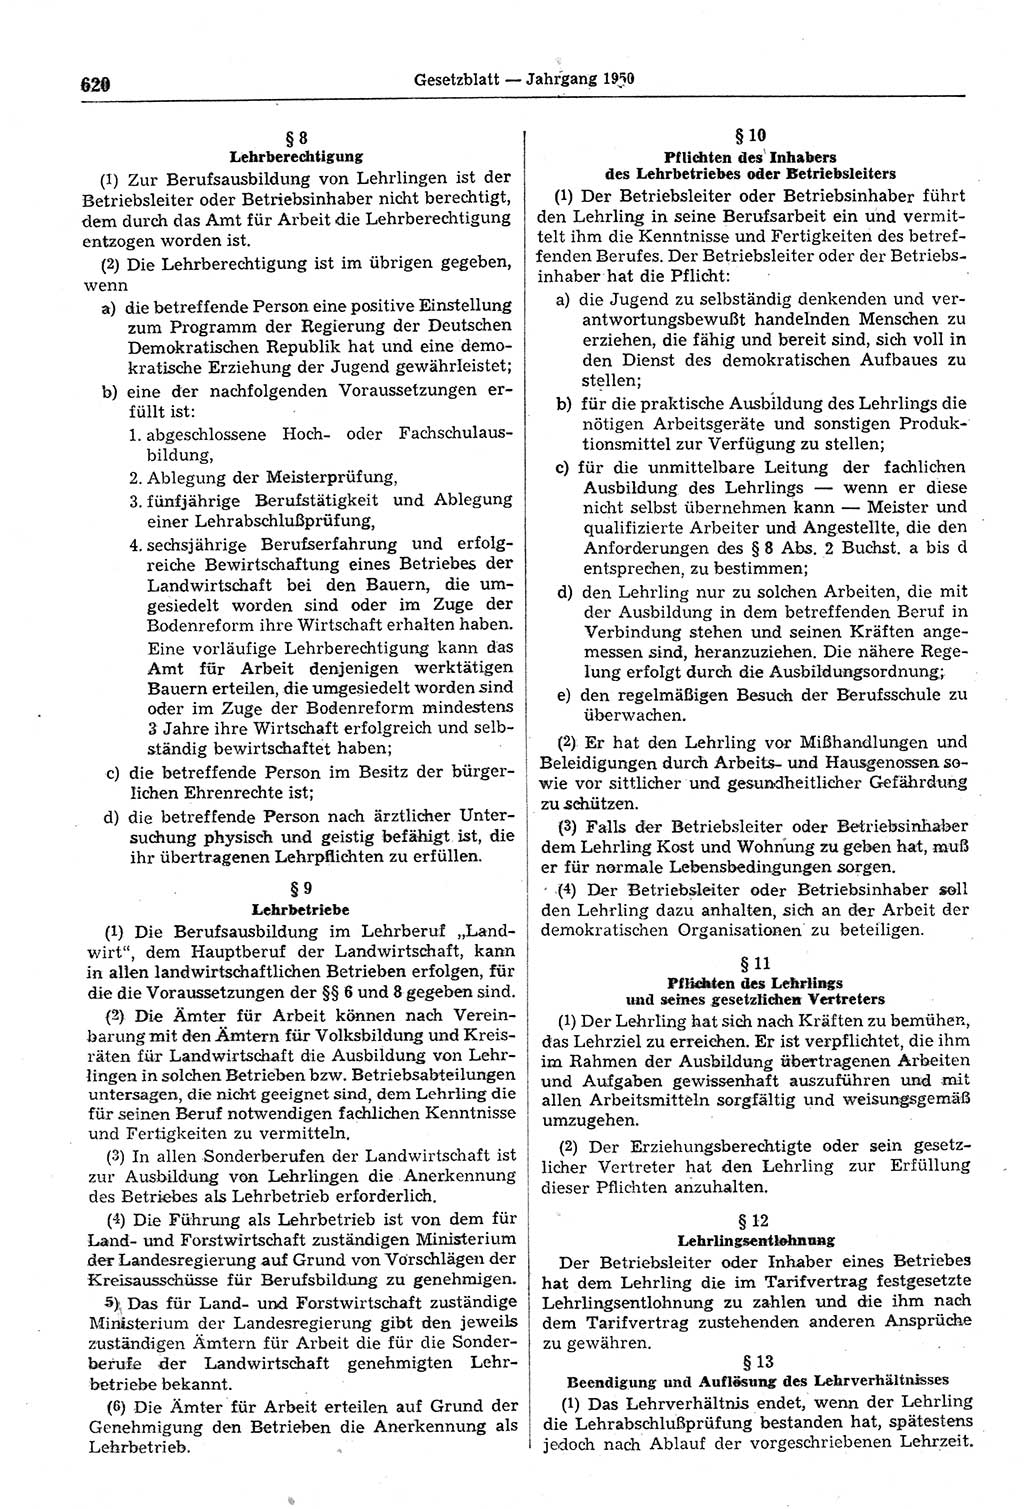 Gesetzblatt (GBl.) der Deutschen Demokratischen Republik (DDR) 1950, Seite 620 (GBl. DDR 1950, S. 620)